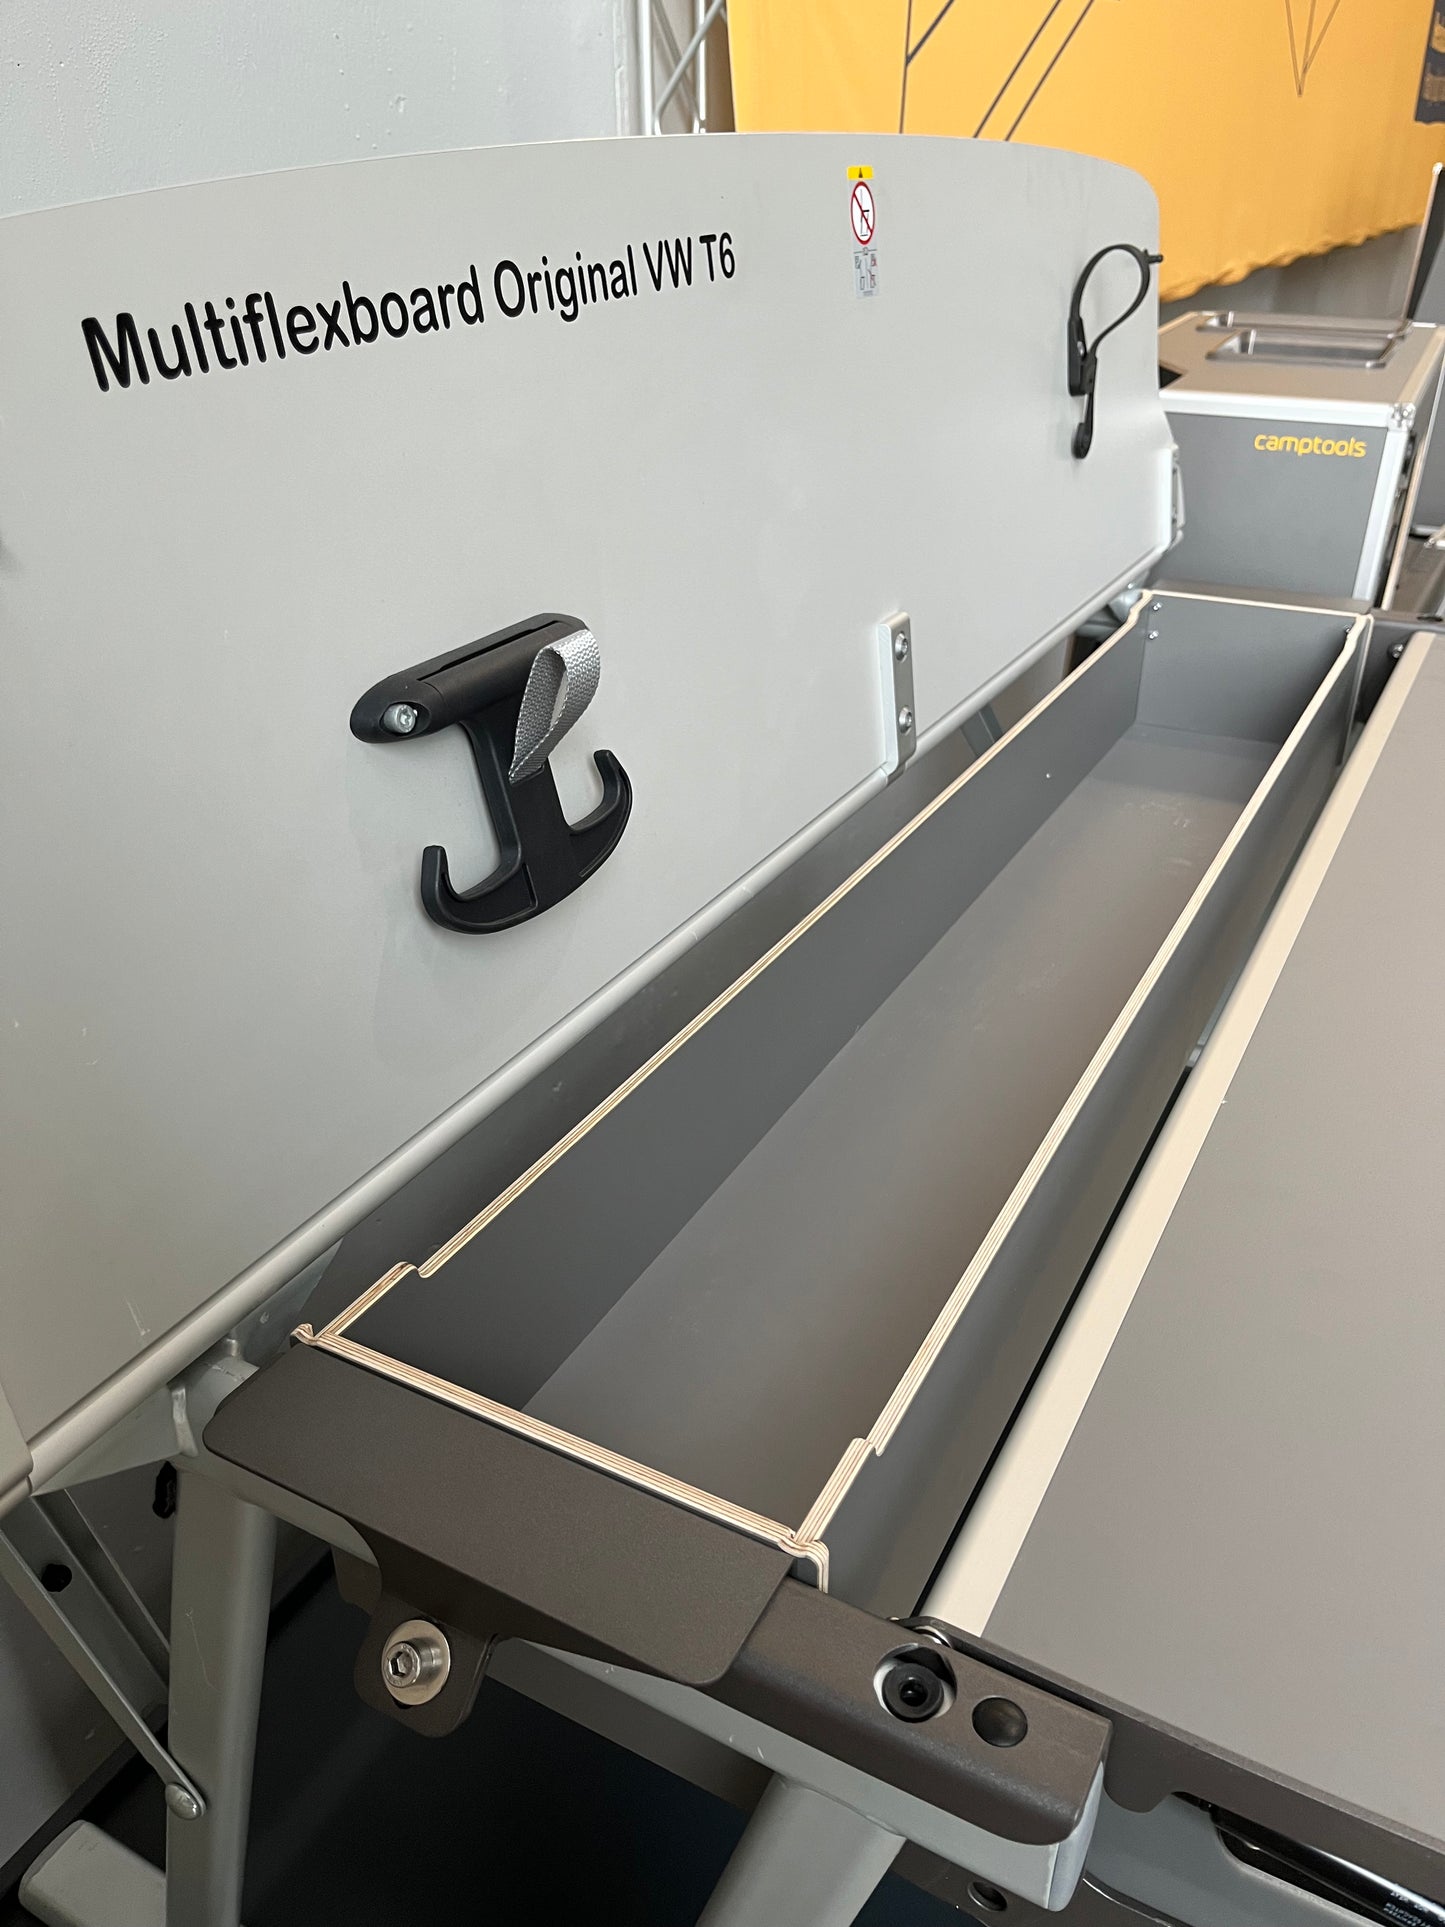 Tub for multiflex board VW